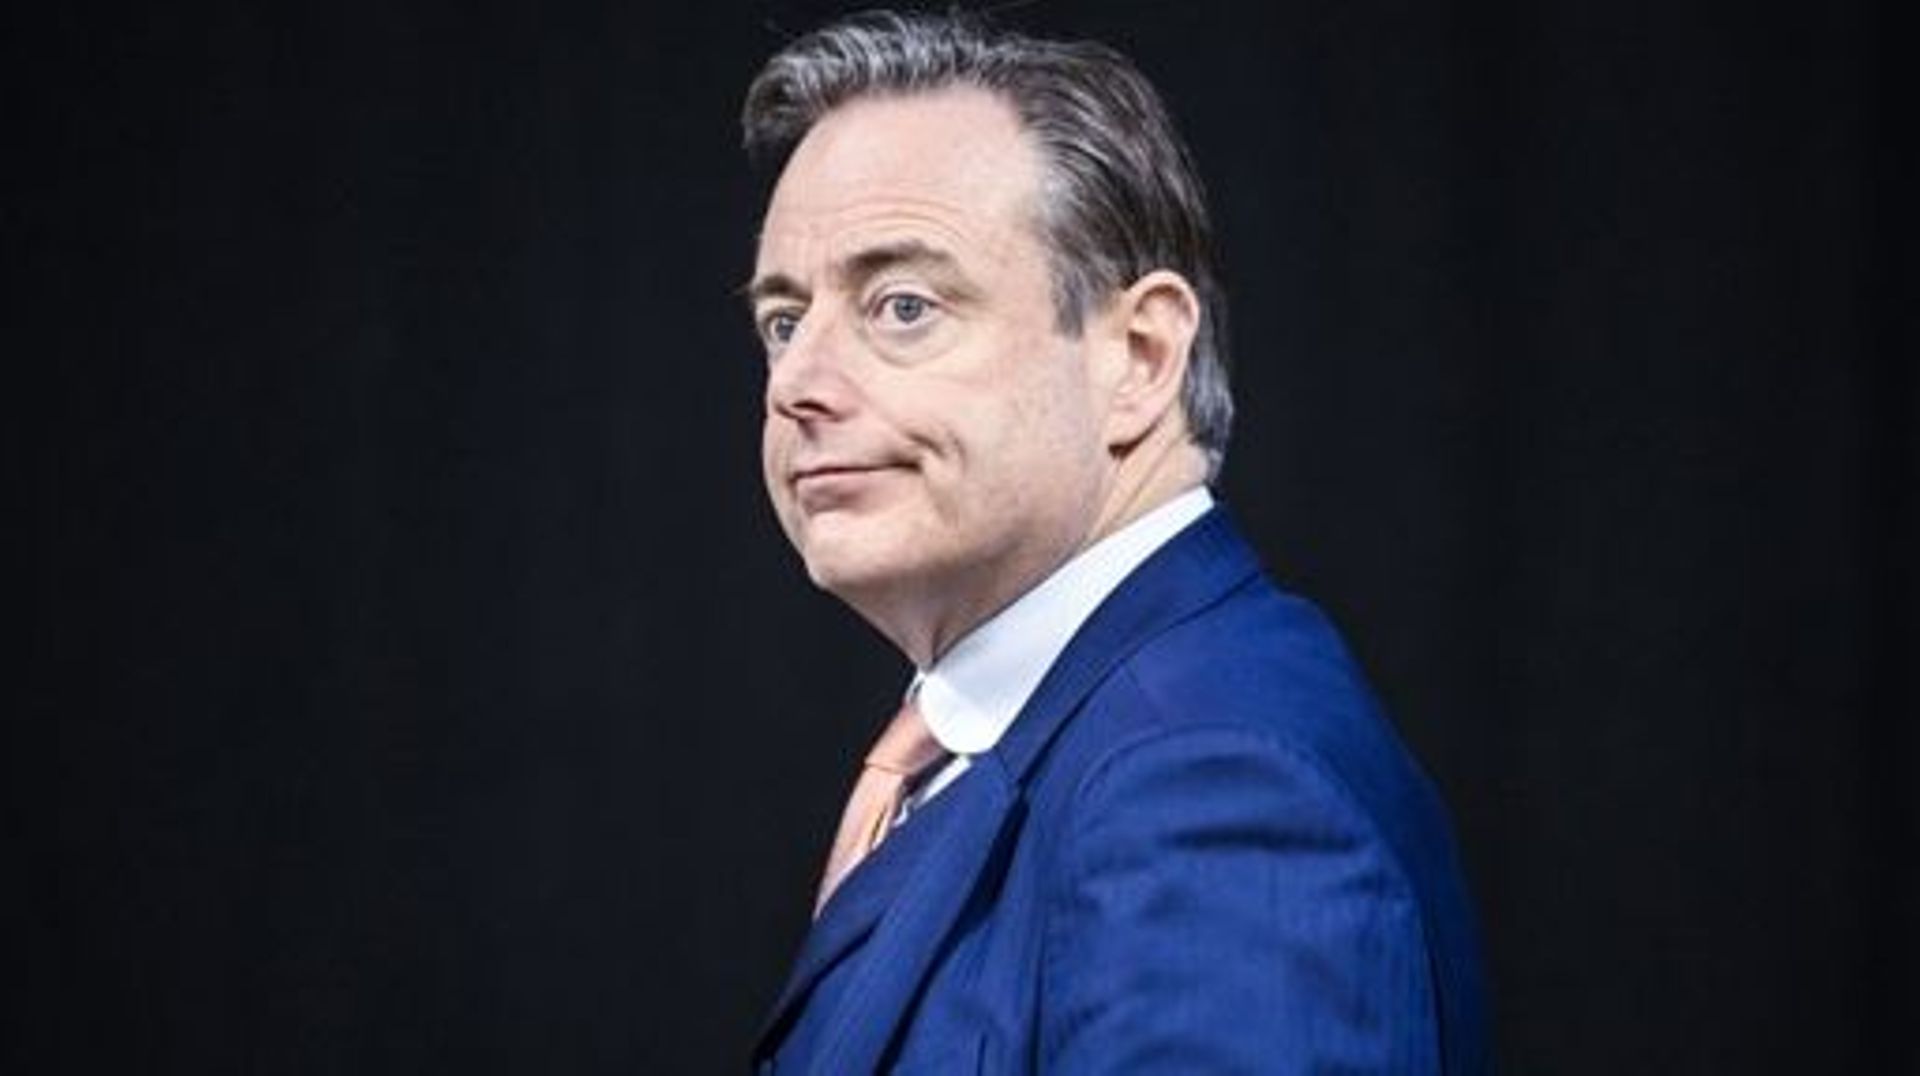 Des individus suspectés de terrorisme comptaient s'en prendre à Bart De Wever.